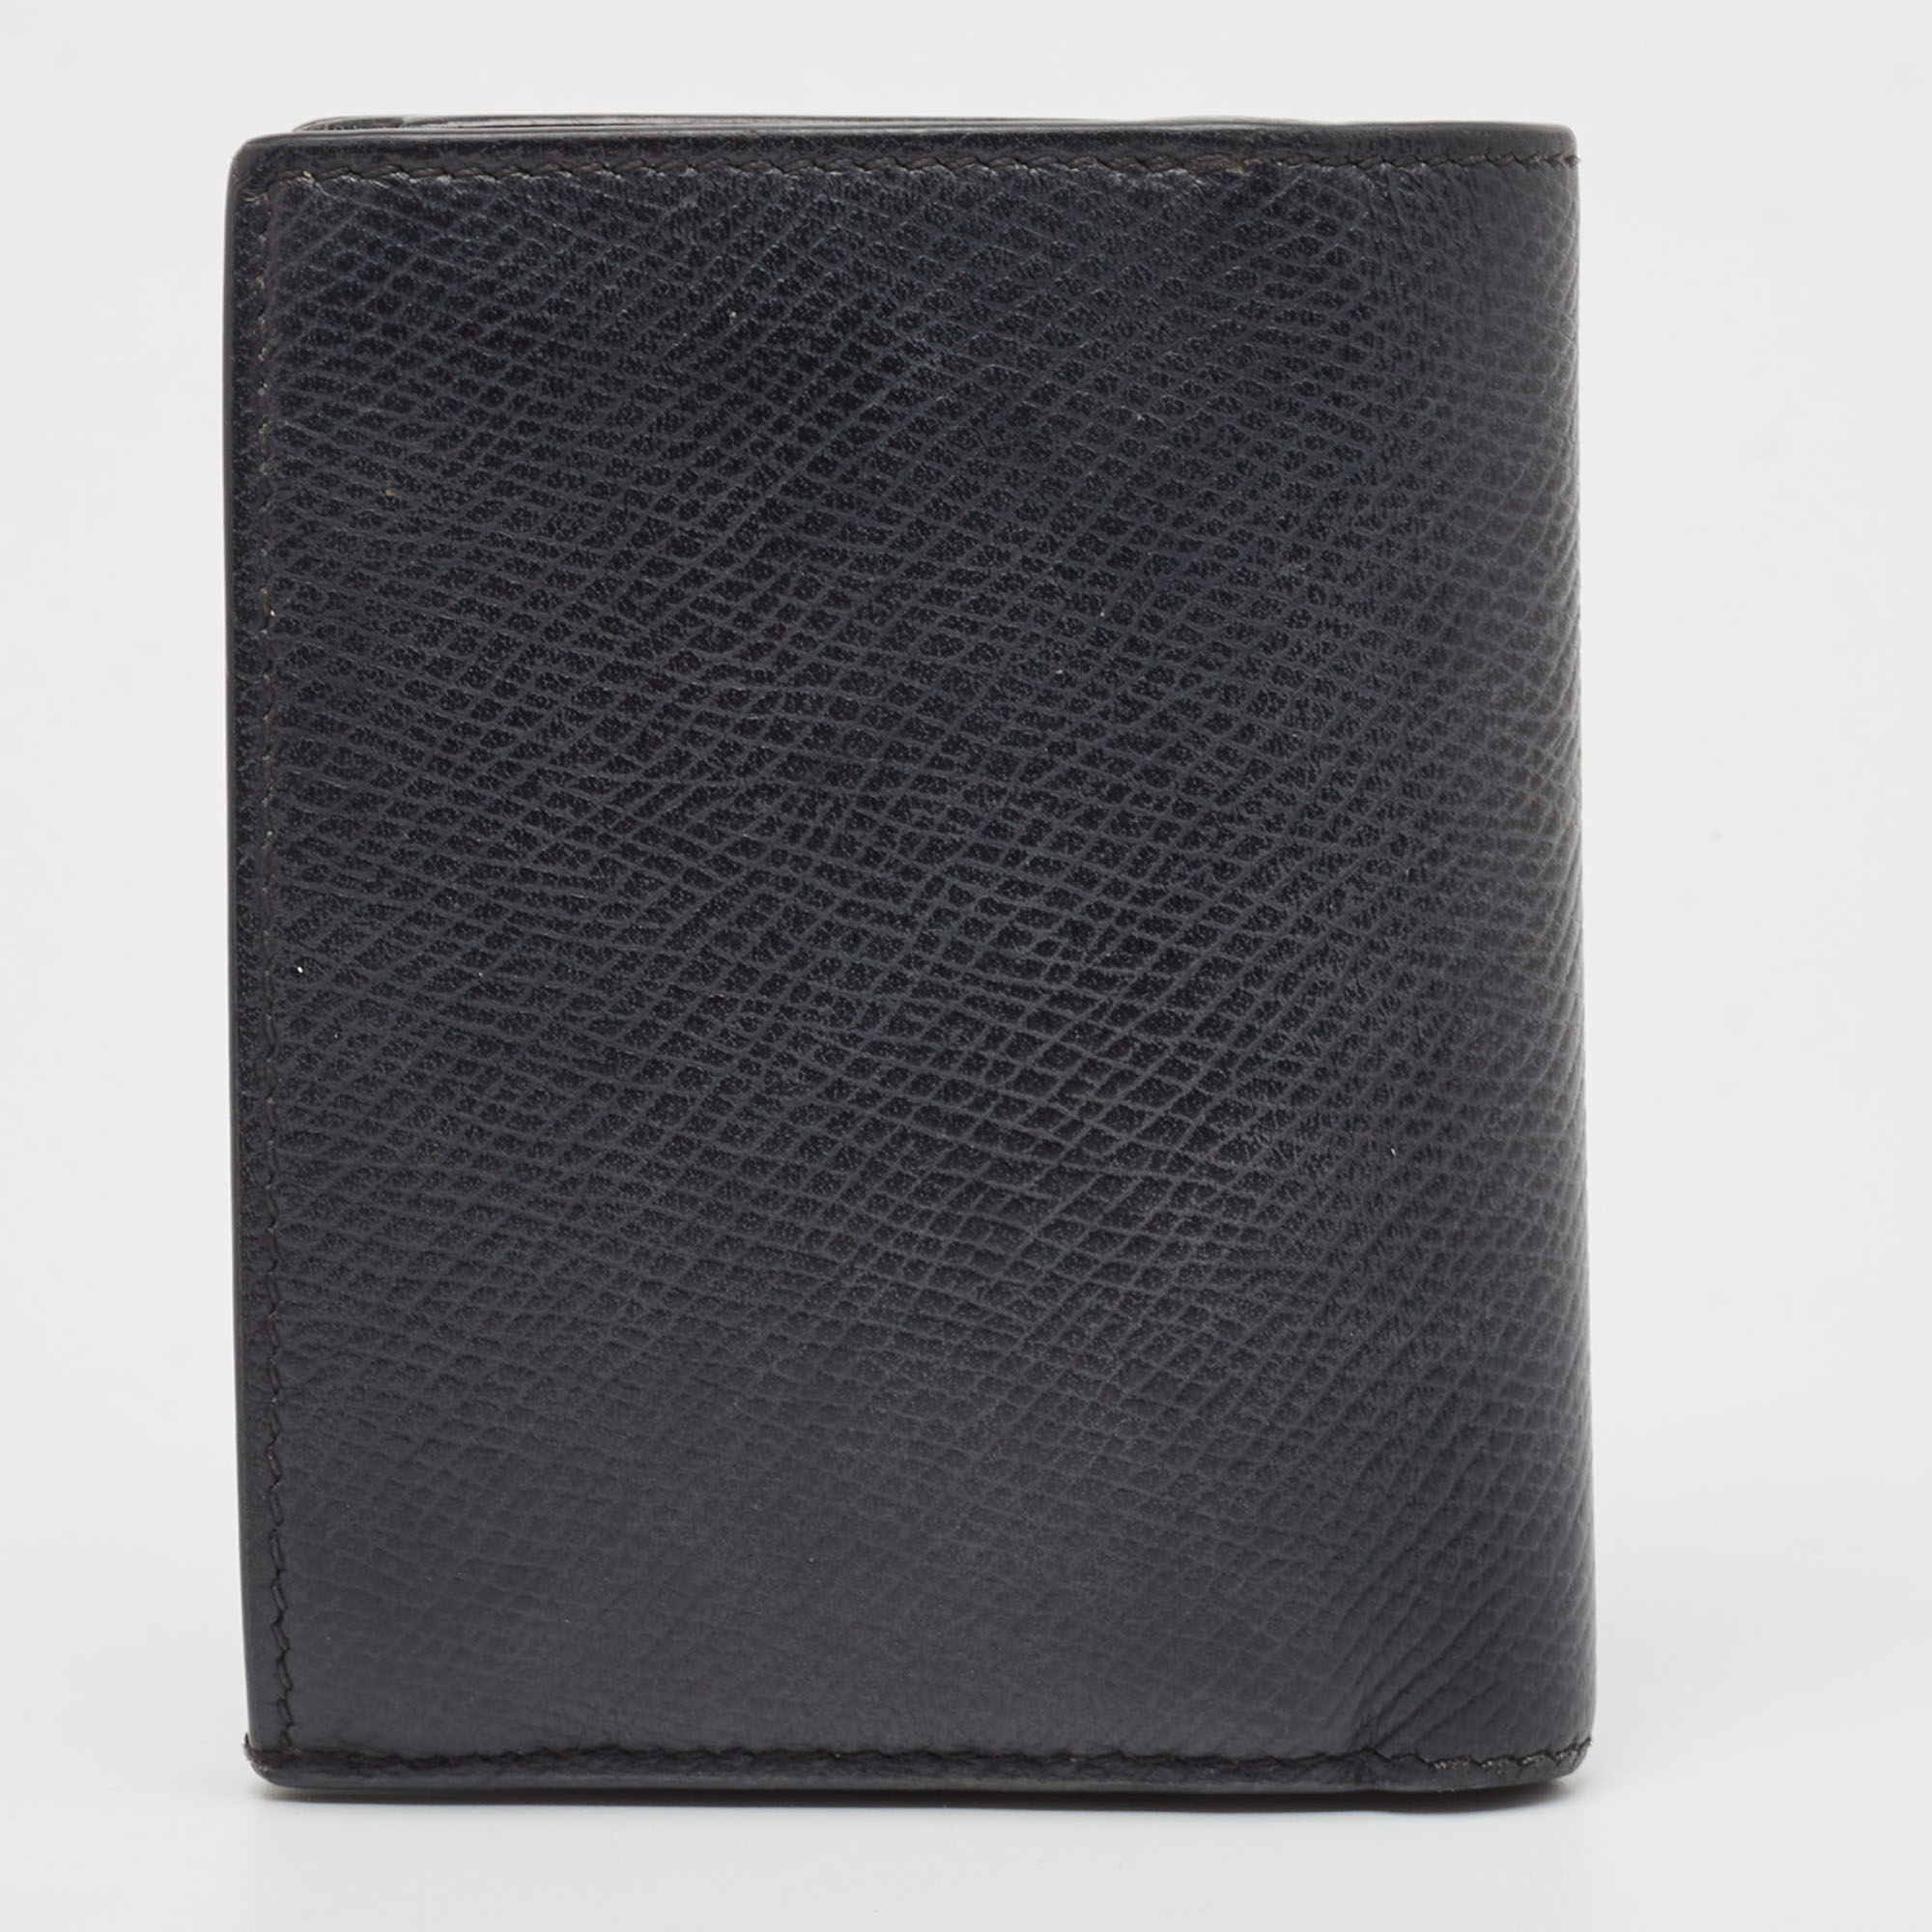 Celine Black Leather Zip Bifold Compact Wallet